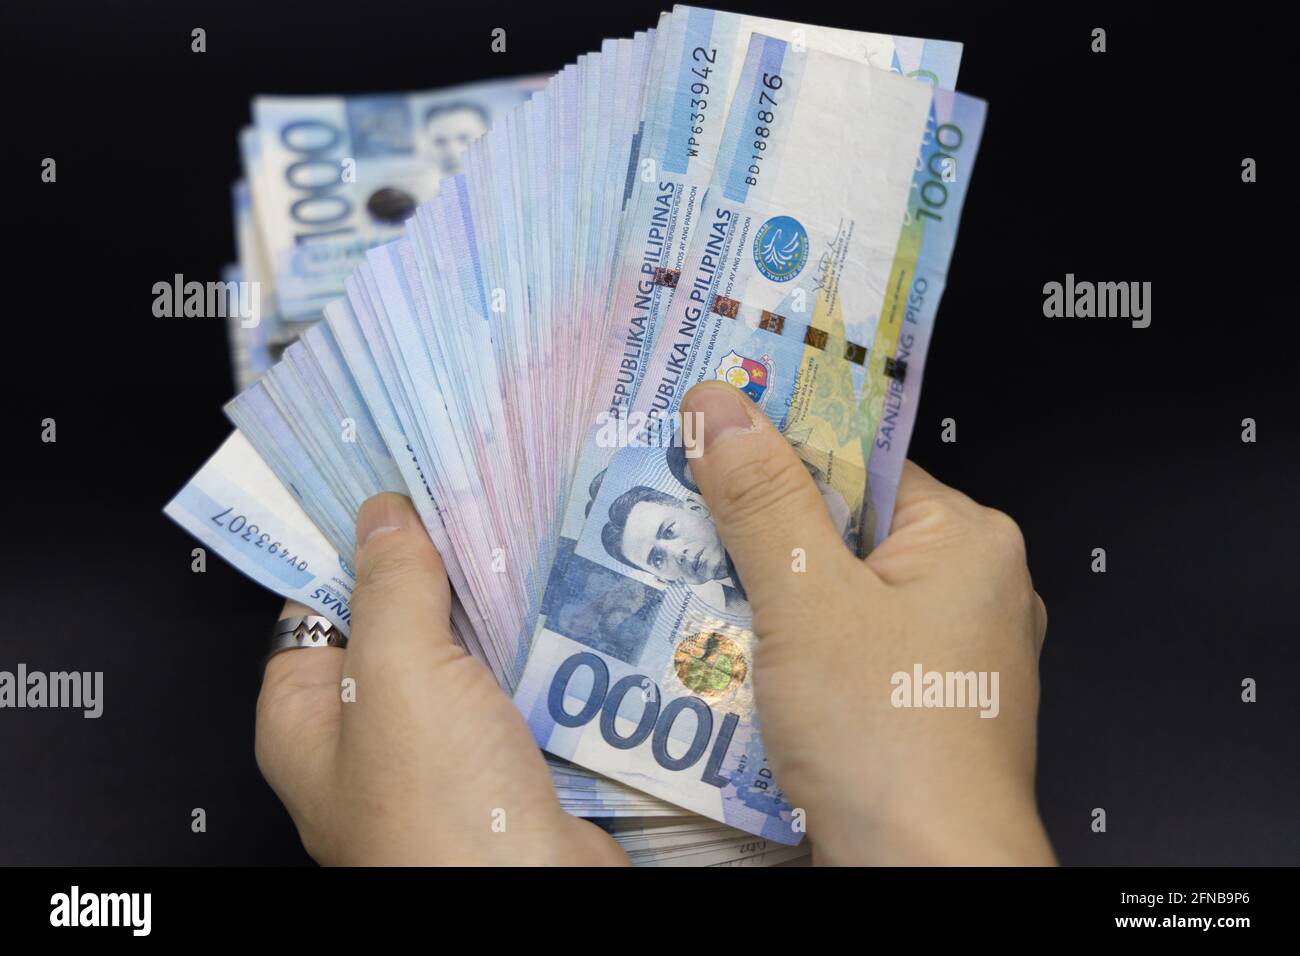 Philippines money to myr